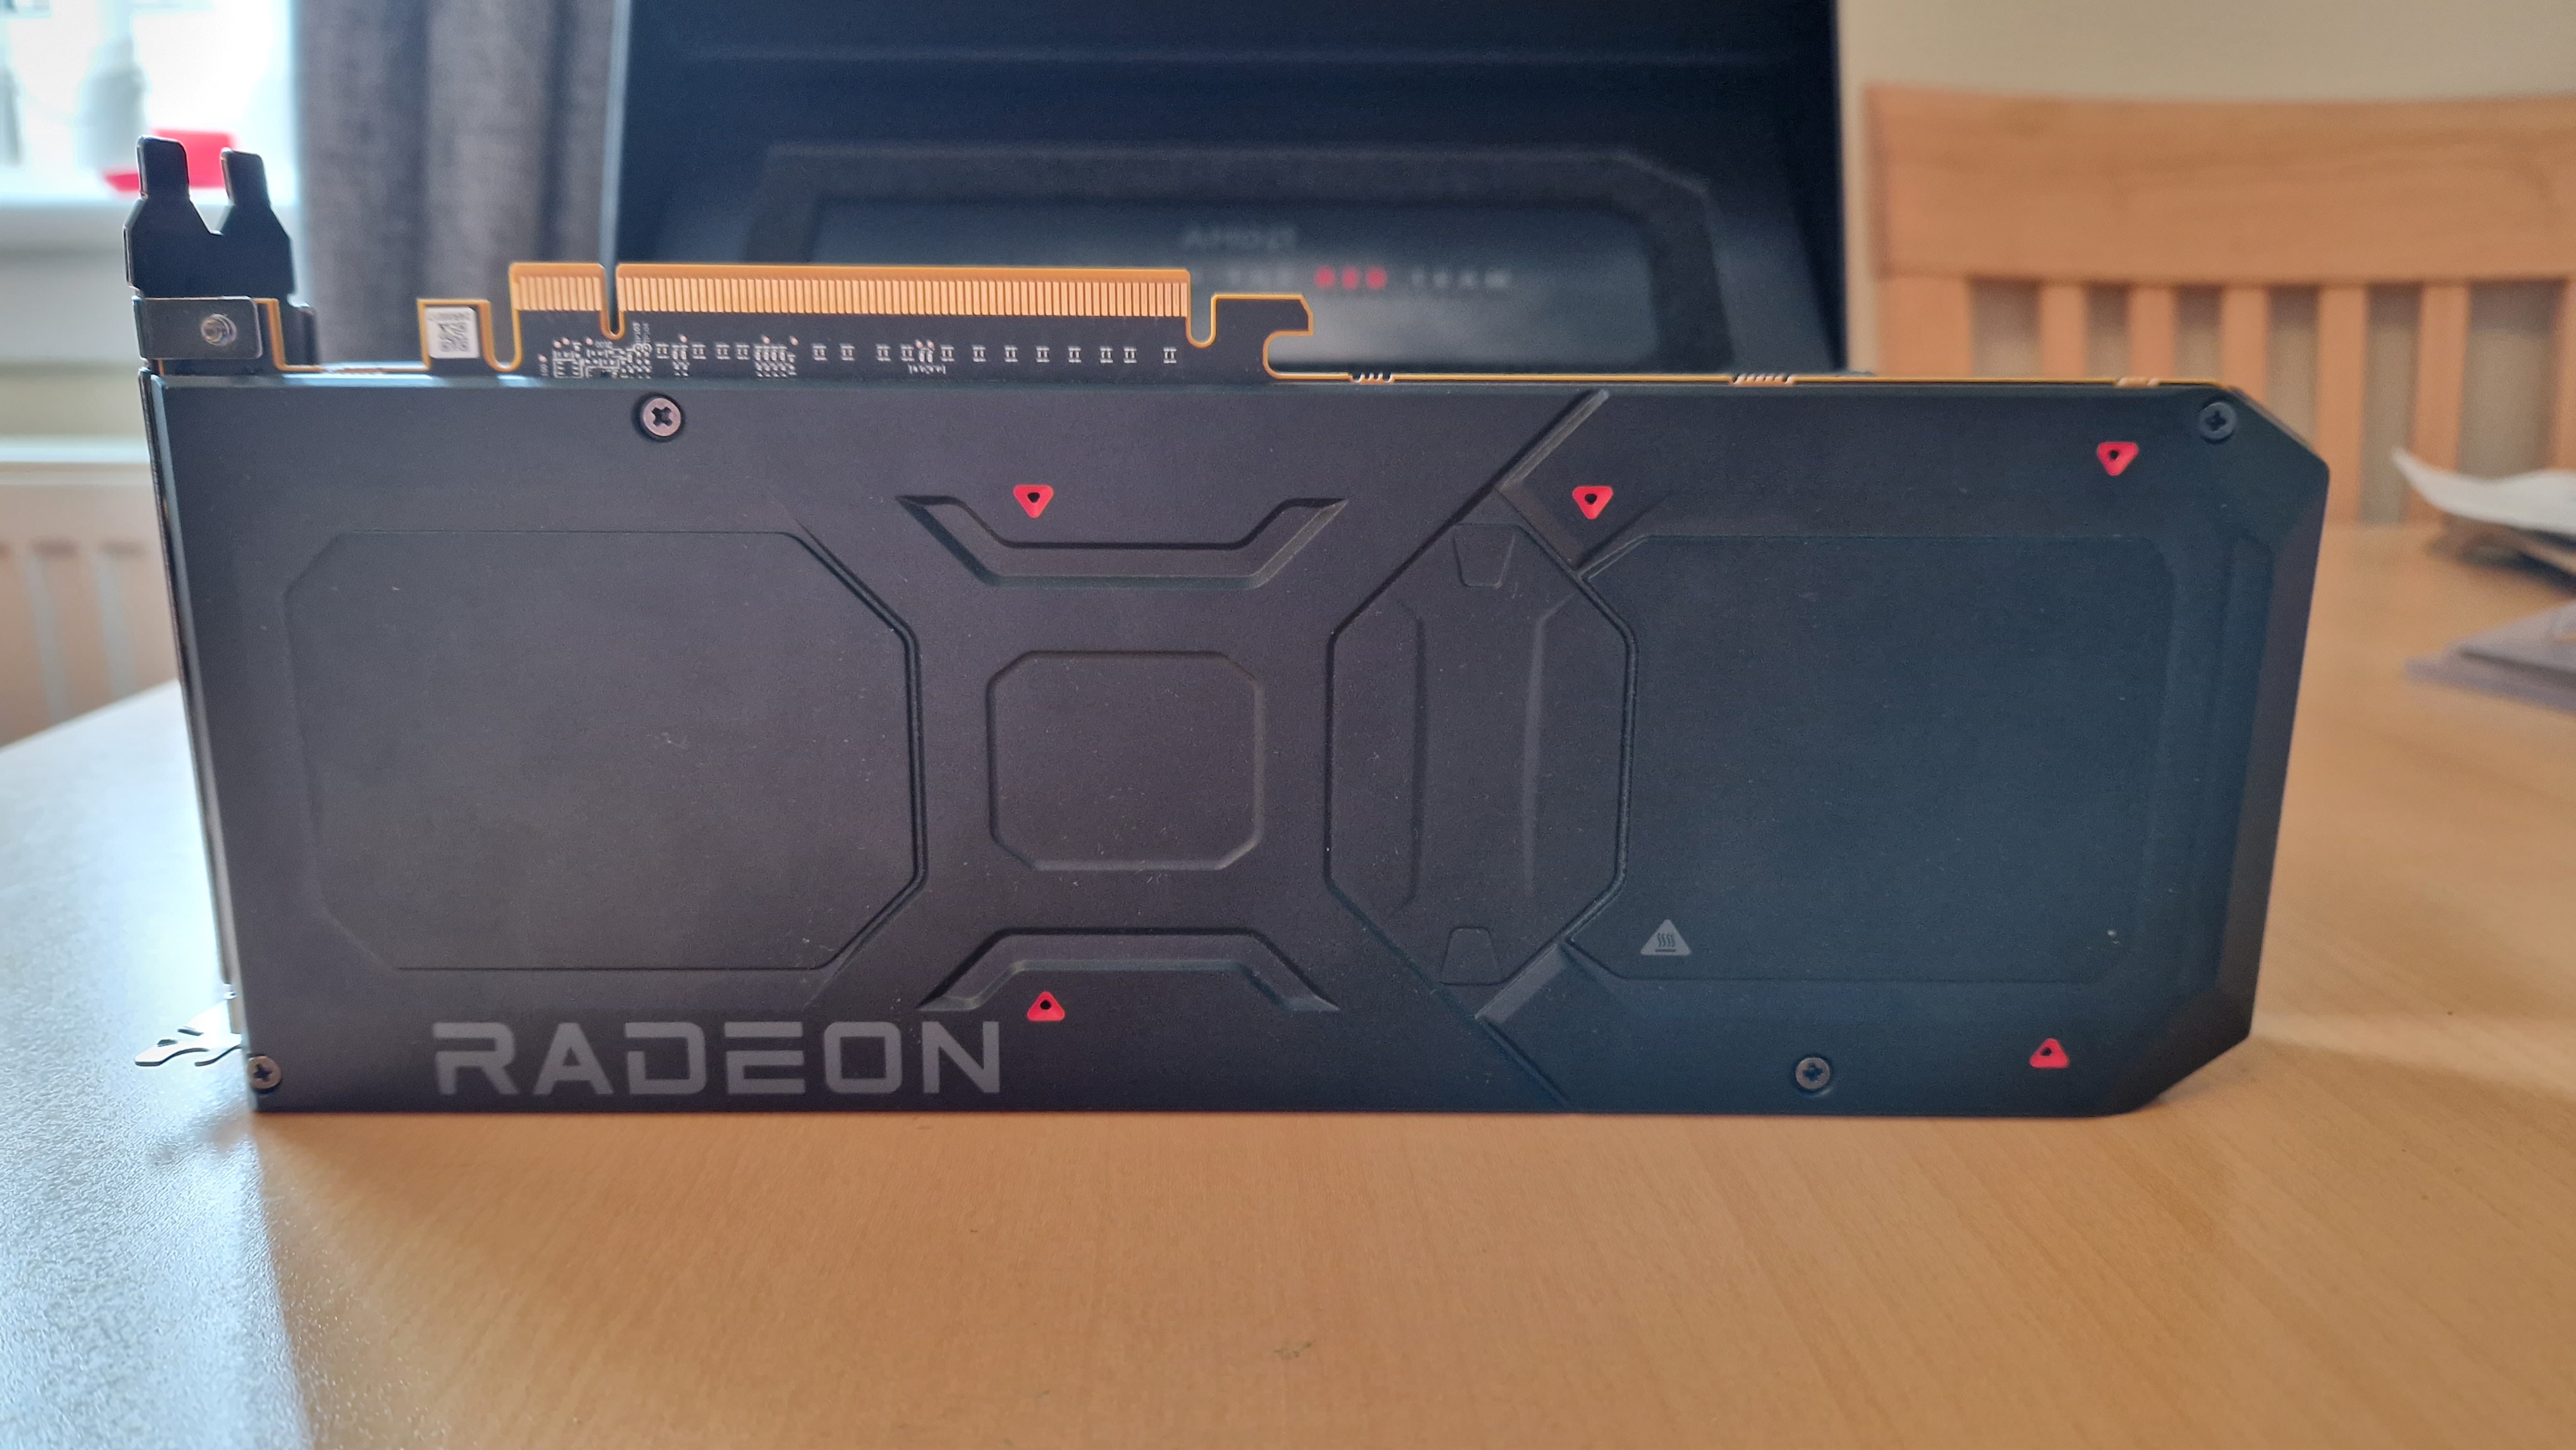 Image de test AMD Radeon RX 7900 XT montrant le haut de la carte graphique